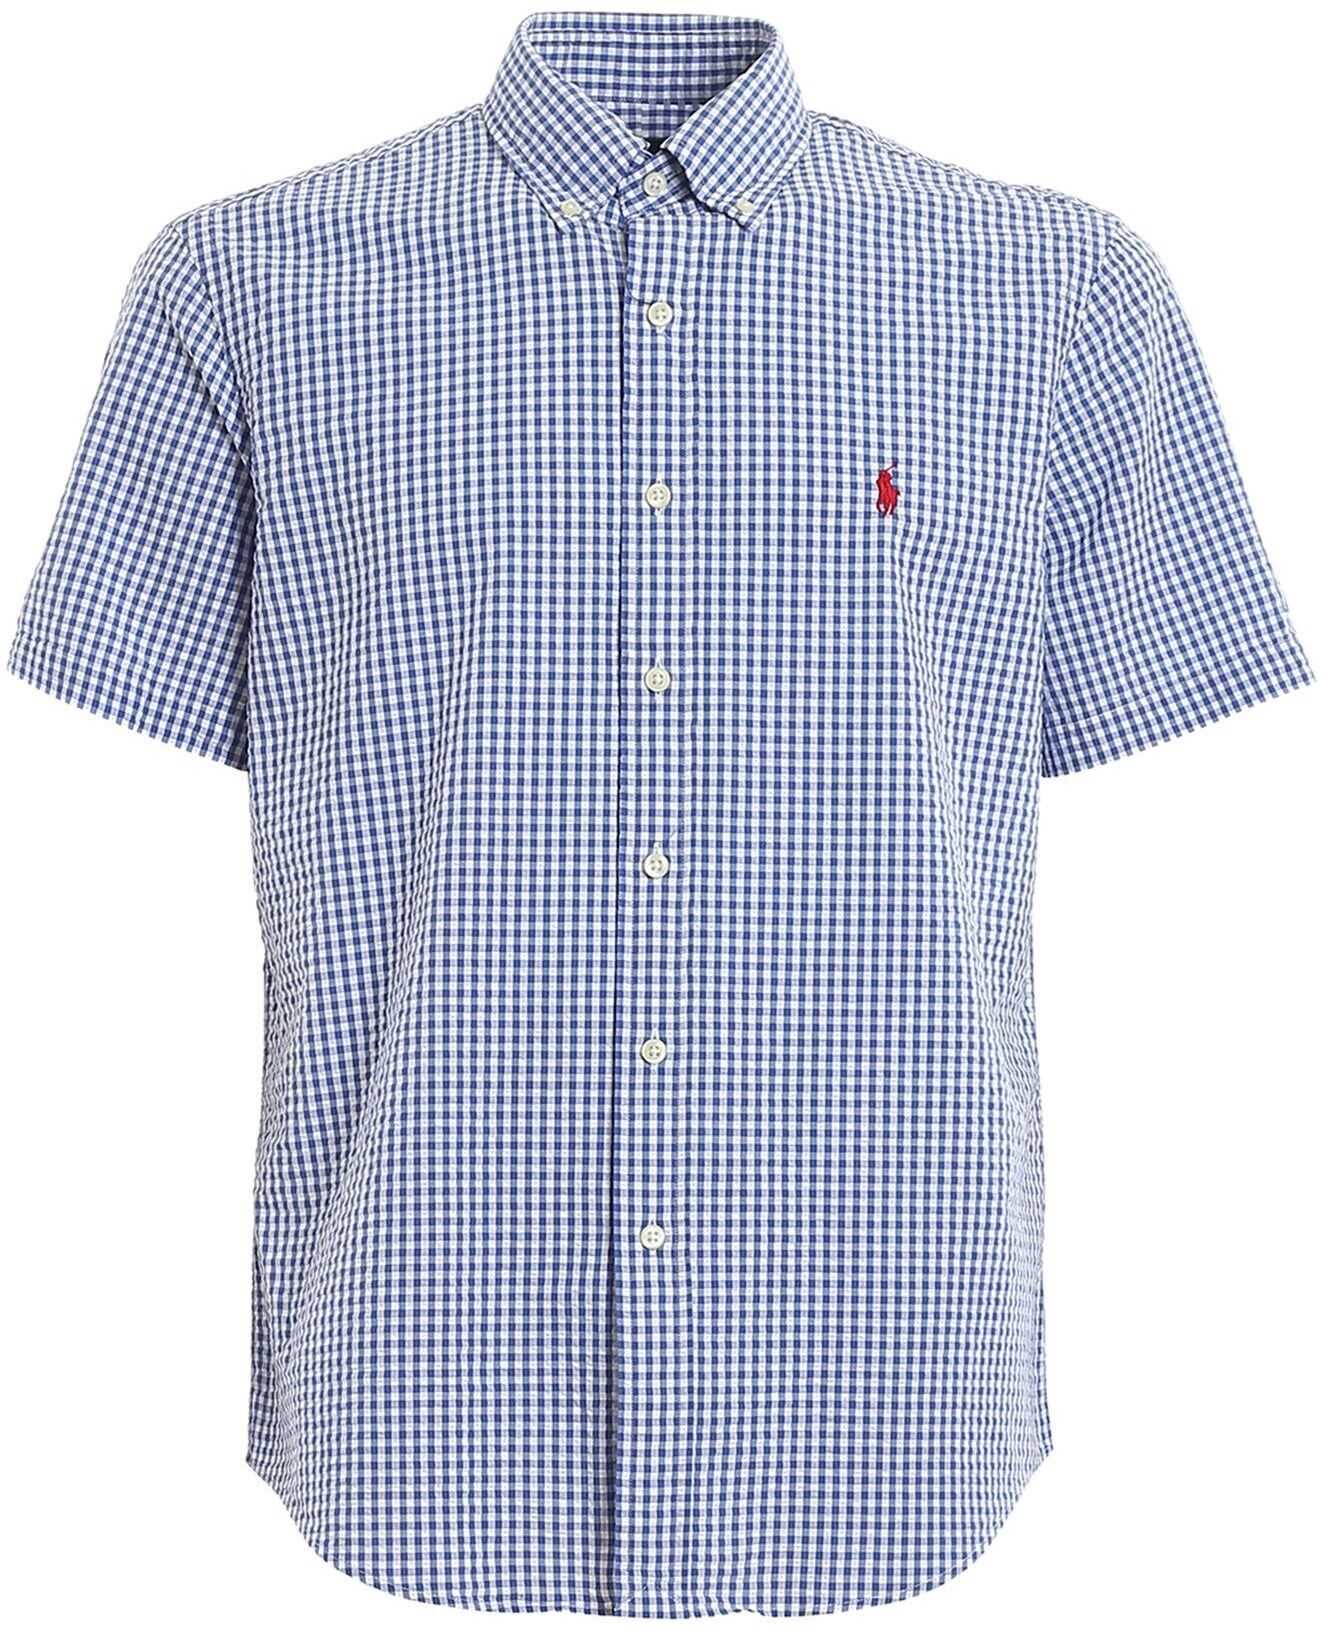 Ralph Lauren Check Print Short Sleeve Cotton Shirt Blue